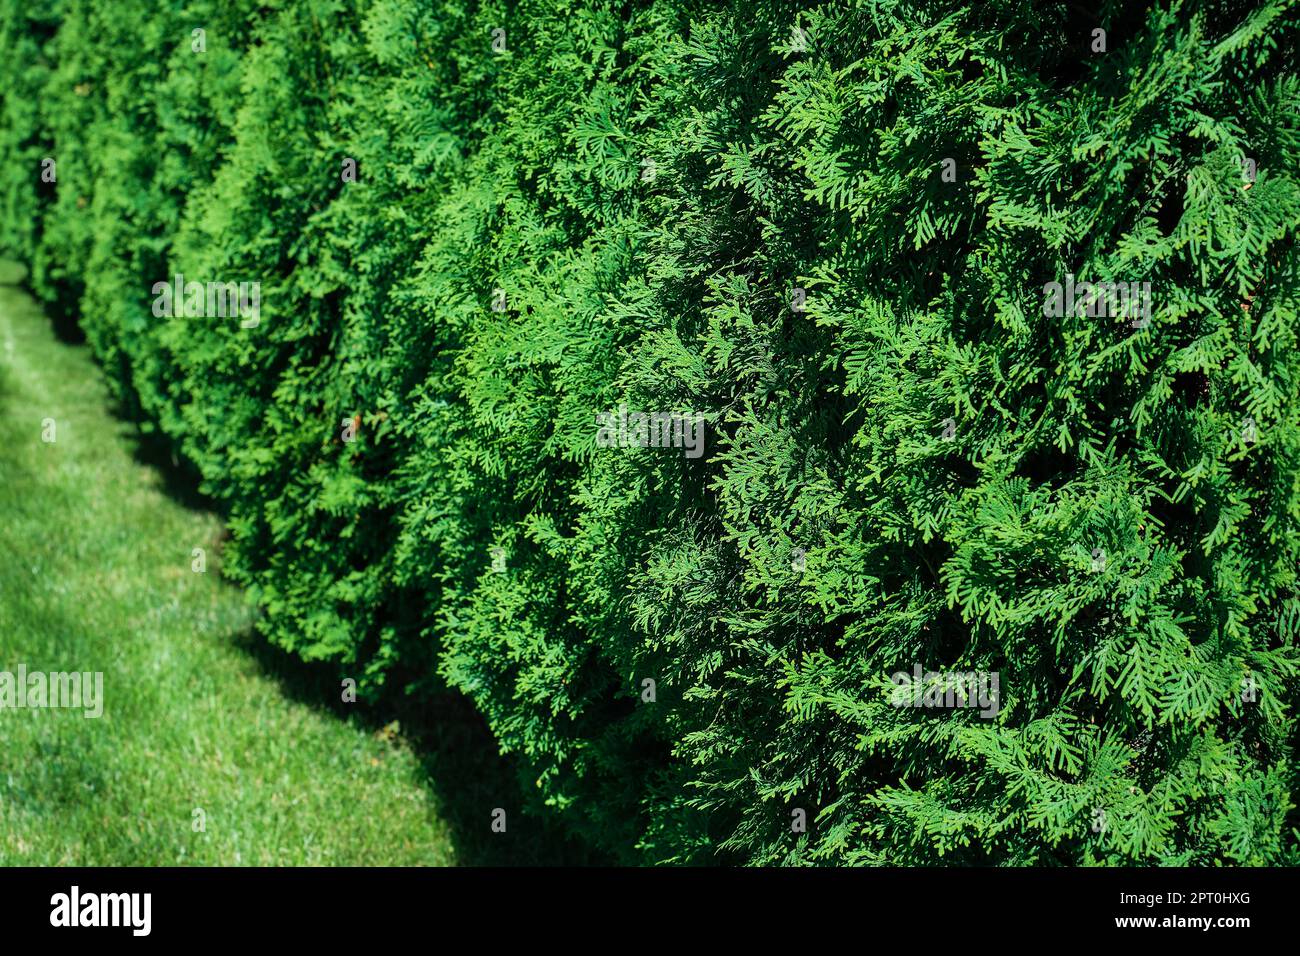 Frisch geschnittenes Gras und dekorative Arborvitae-Hecke auf einem gepflegten Rasen, selektiver Fokus mit geringer Schärfentiefe Stockfoto